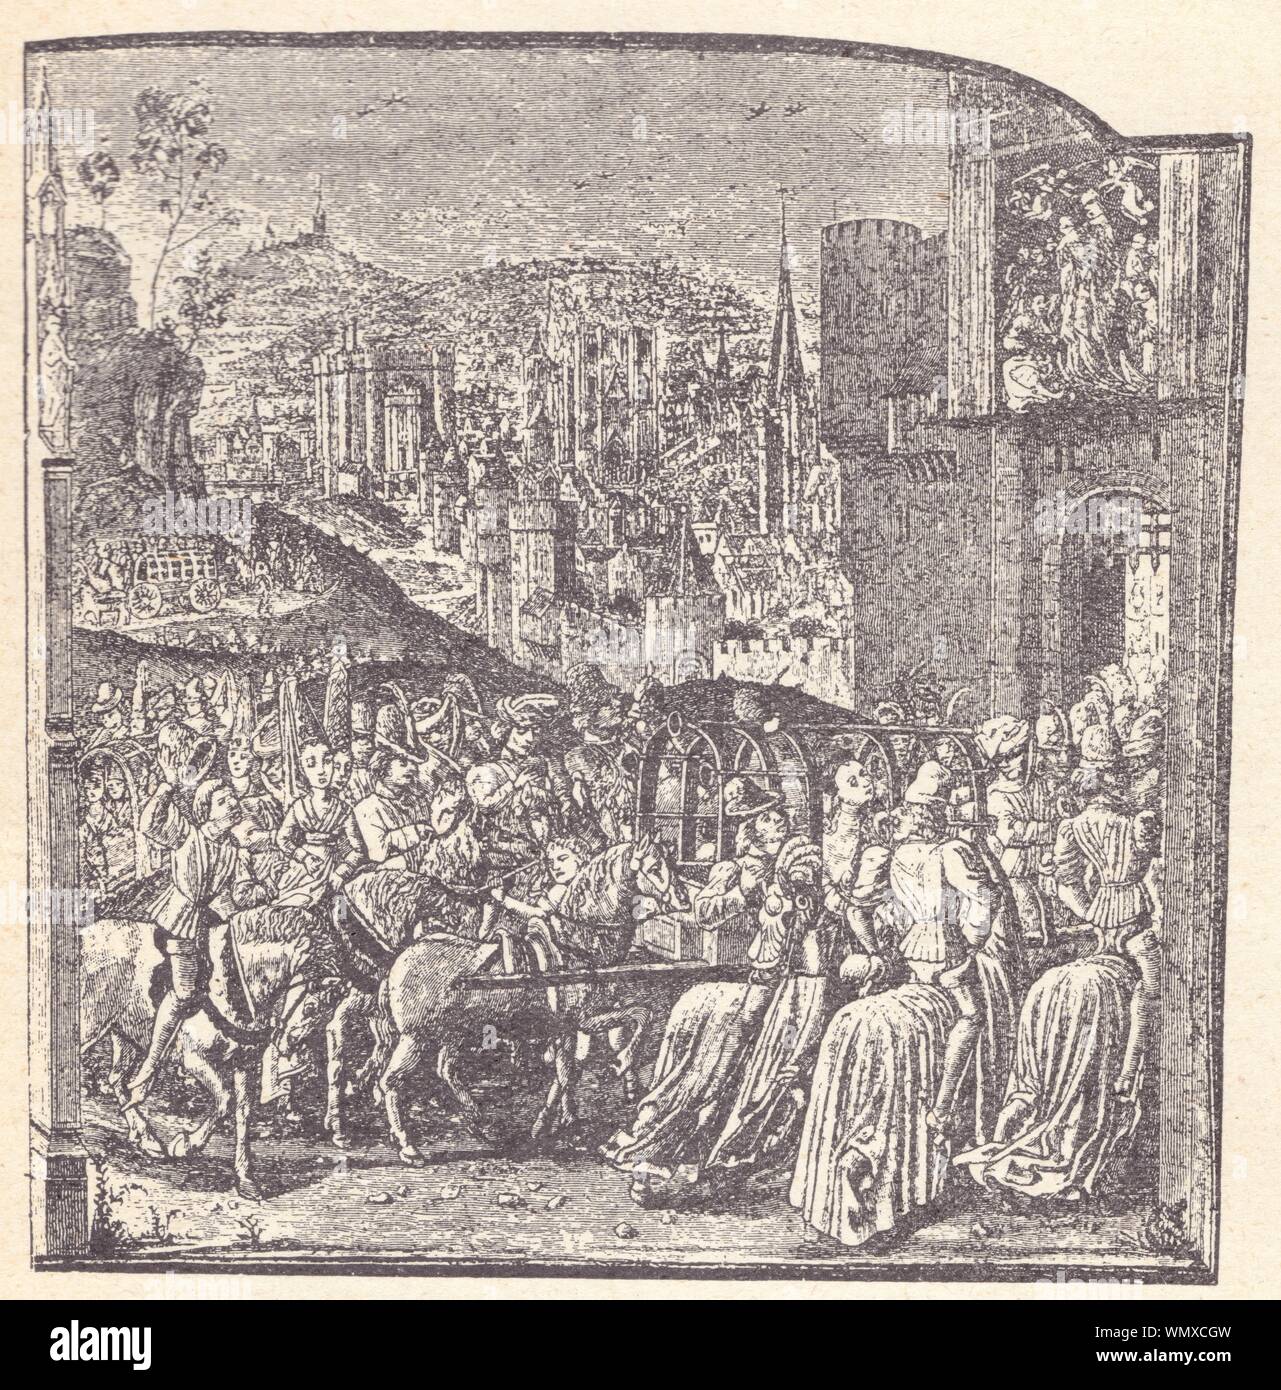 Entrée d'Isabeau de Bavière à Paris. Miniature de Philippe de Mazerolles ornant un manuscrit de Froissart Stock Photo